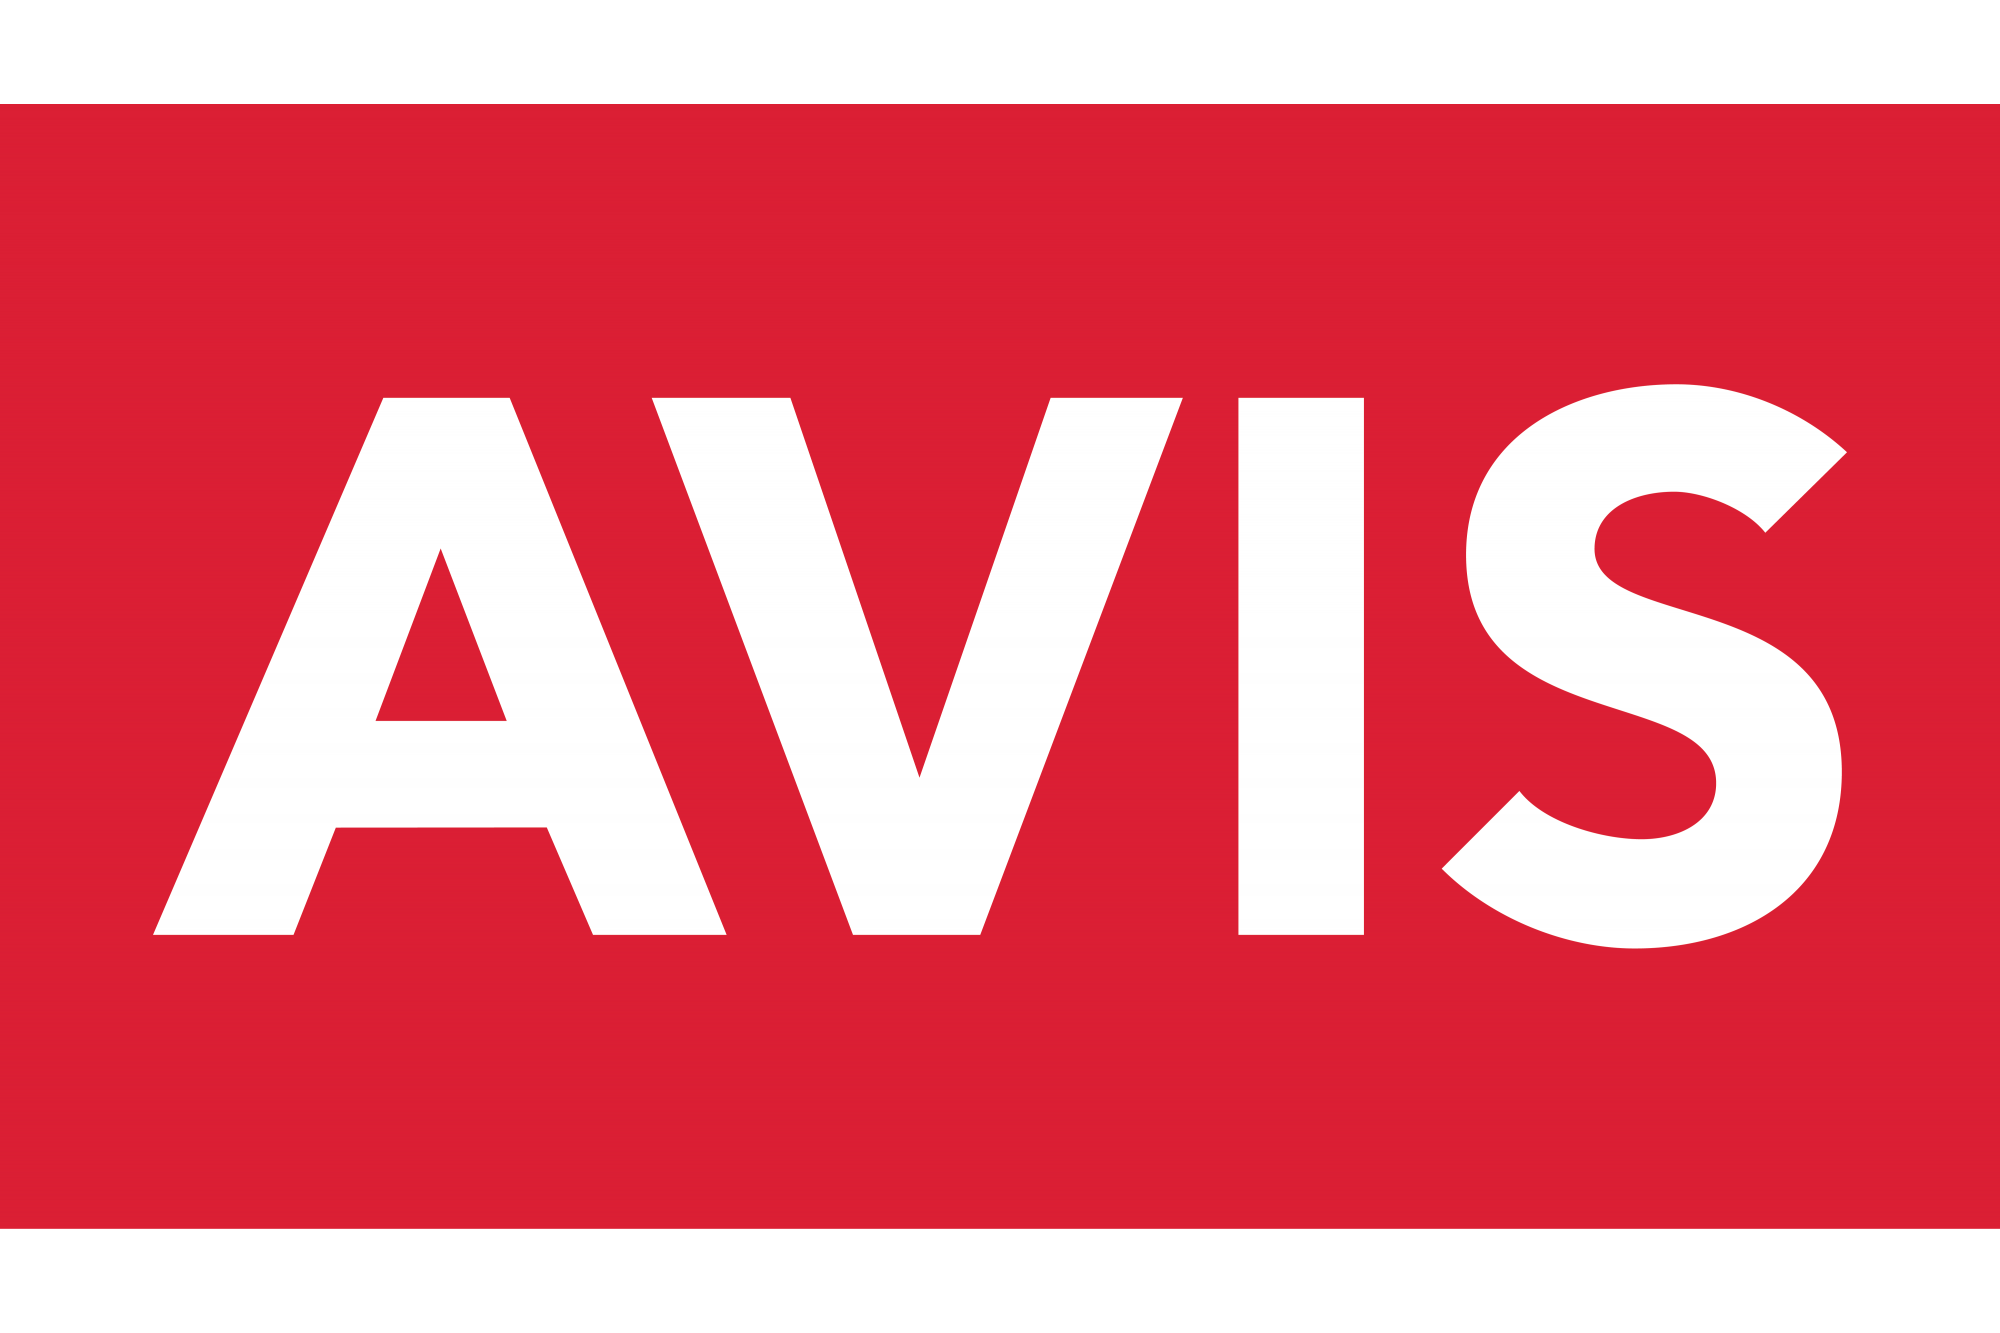 Η Avis προσελκύει διεθνή κεφάλαια ύψους €130 εκατ.  για επενδύσεις στην πράσινη κινητικότητα